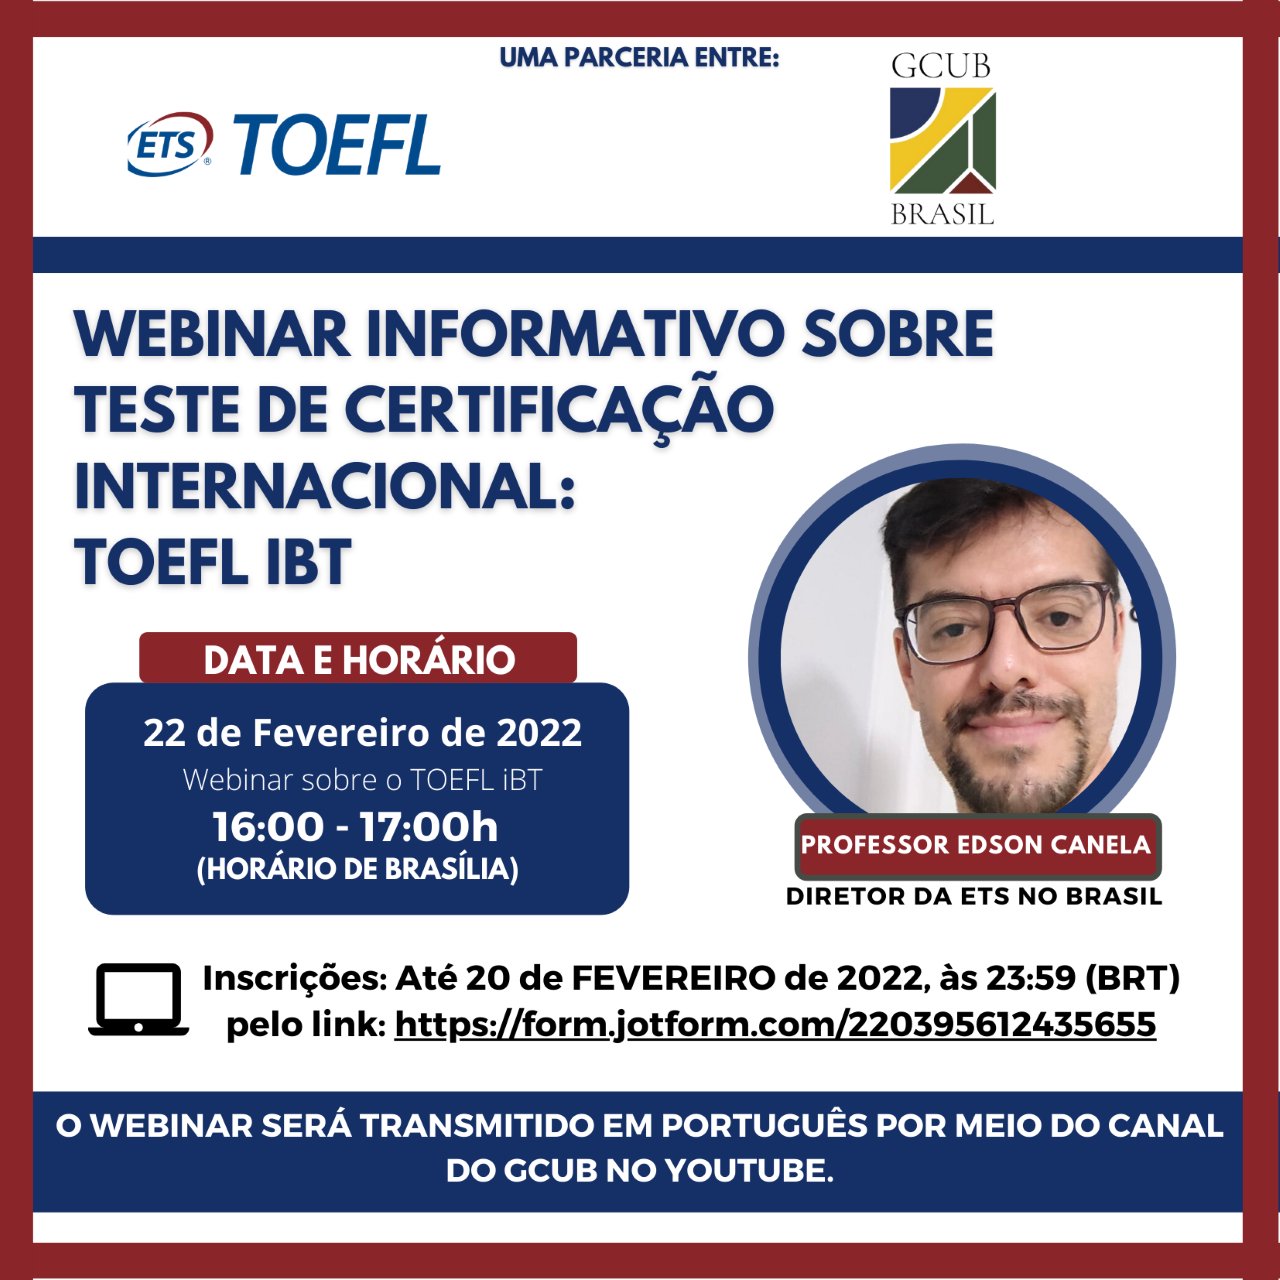 Webinar Informativo sobre Teste de Certificação Internacional TOEFL IBT